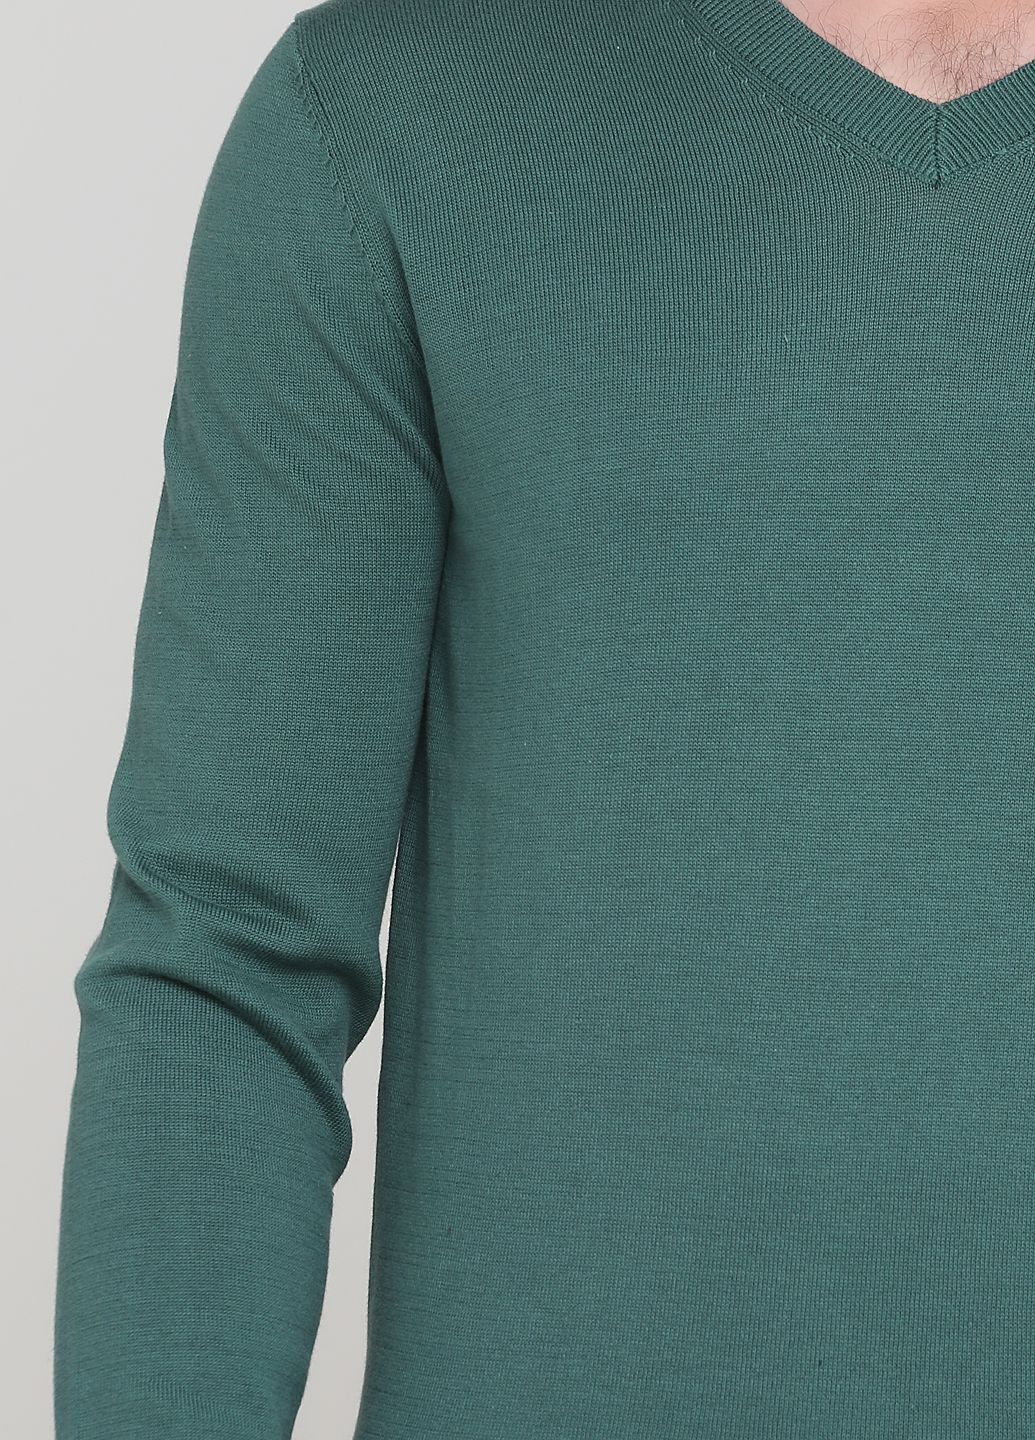 Зеленый демисезонный свитер мужской - свитер af8045m Abercrombie & Fitch